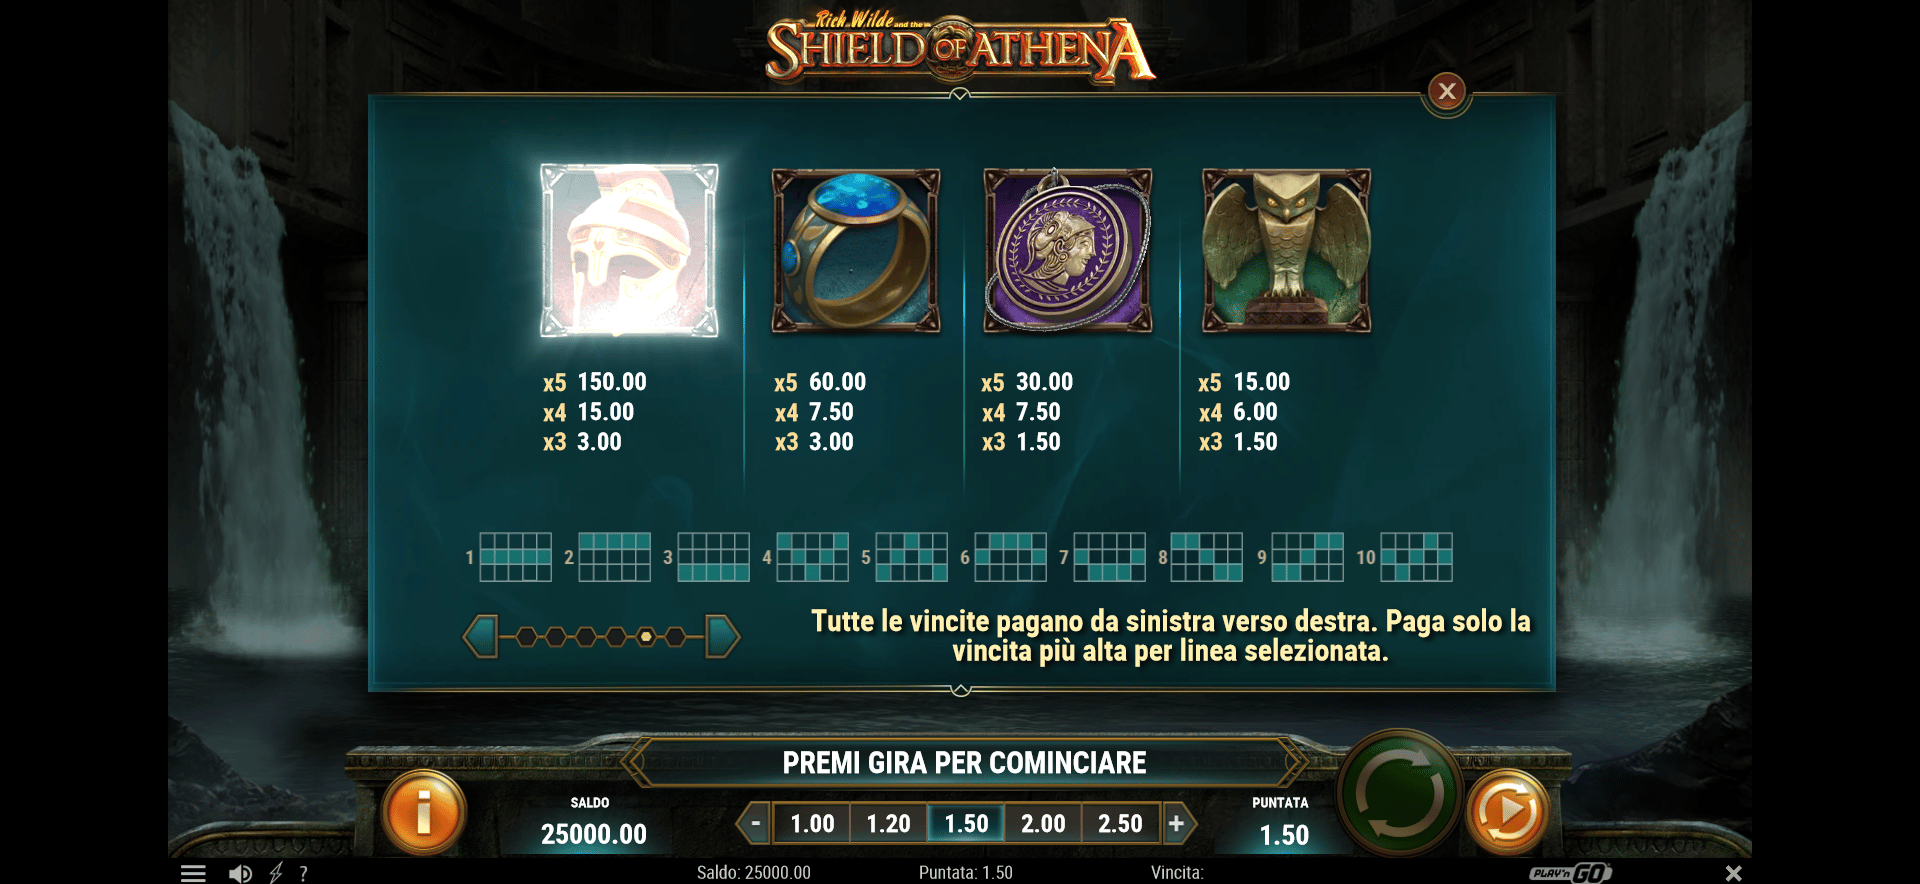 tabella dei premi della slot machine rich wilde and the shield of athena